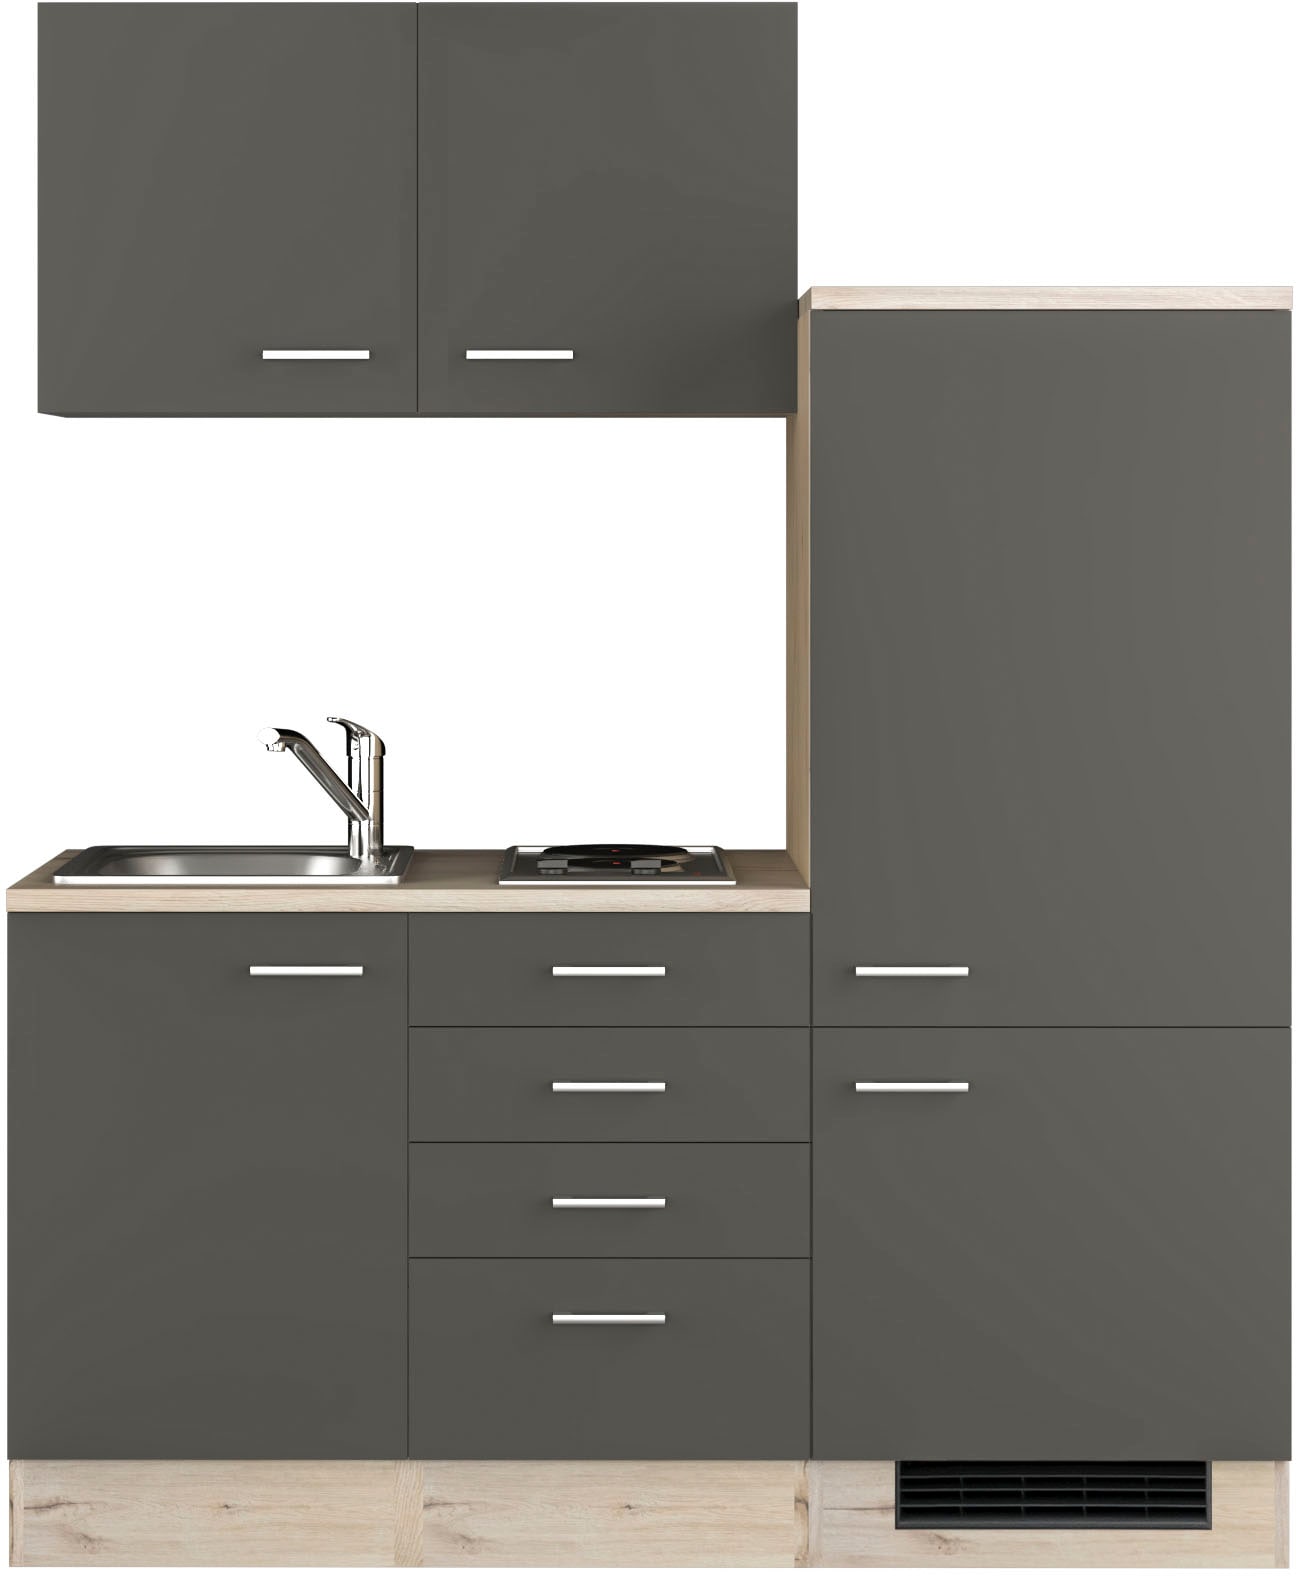 Flex-Well Küche »Morena«, Gesamtbreite 160 cm, mit Einbau-Kühlschrank, Kochfeld und Spüle, etc.